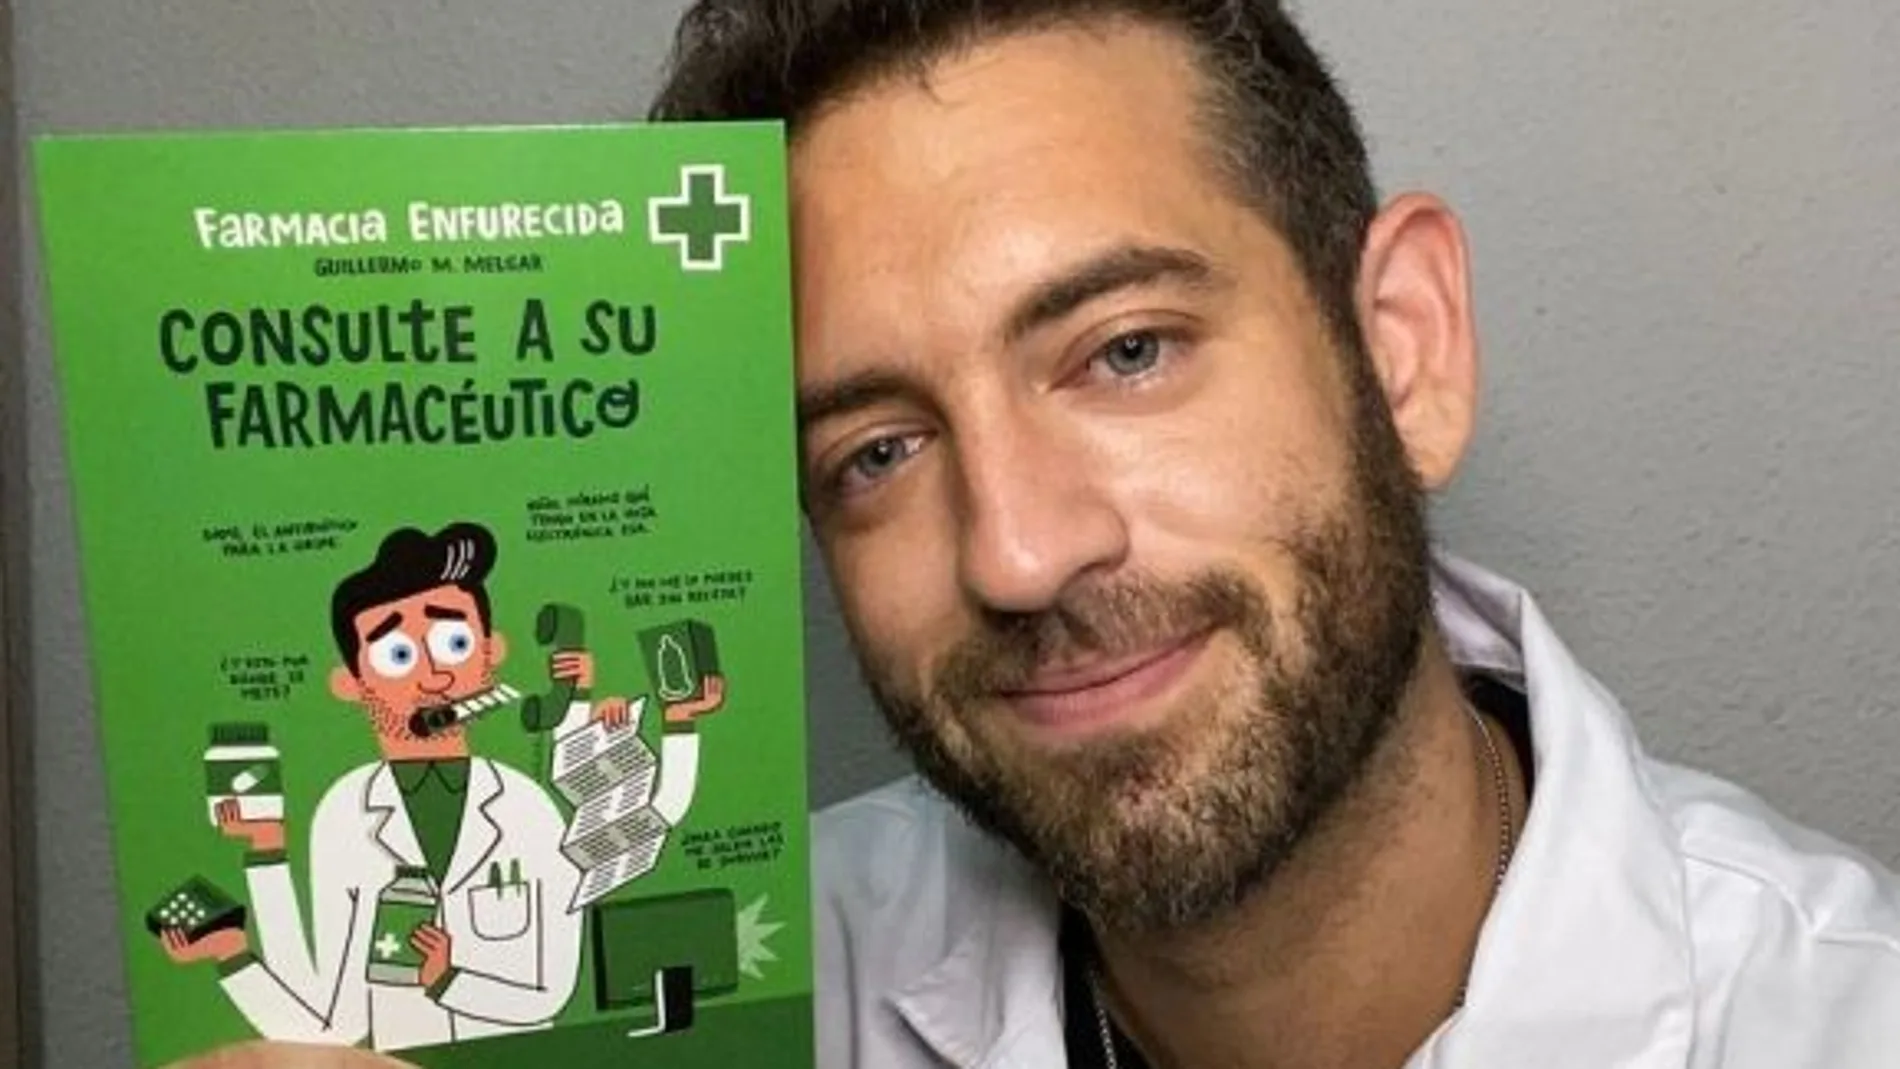 El joven Guillermo Martín Melgar, más conocido como Farmacia Enfurecida, publica su primer libro escrito bajo el título ‘Consulte a su farmacéutico’, un anecdotario de botica y rebotica que promete buenas dosis de humor como principio activo